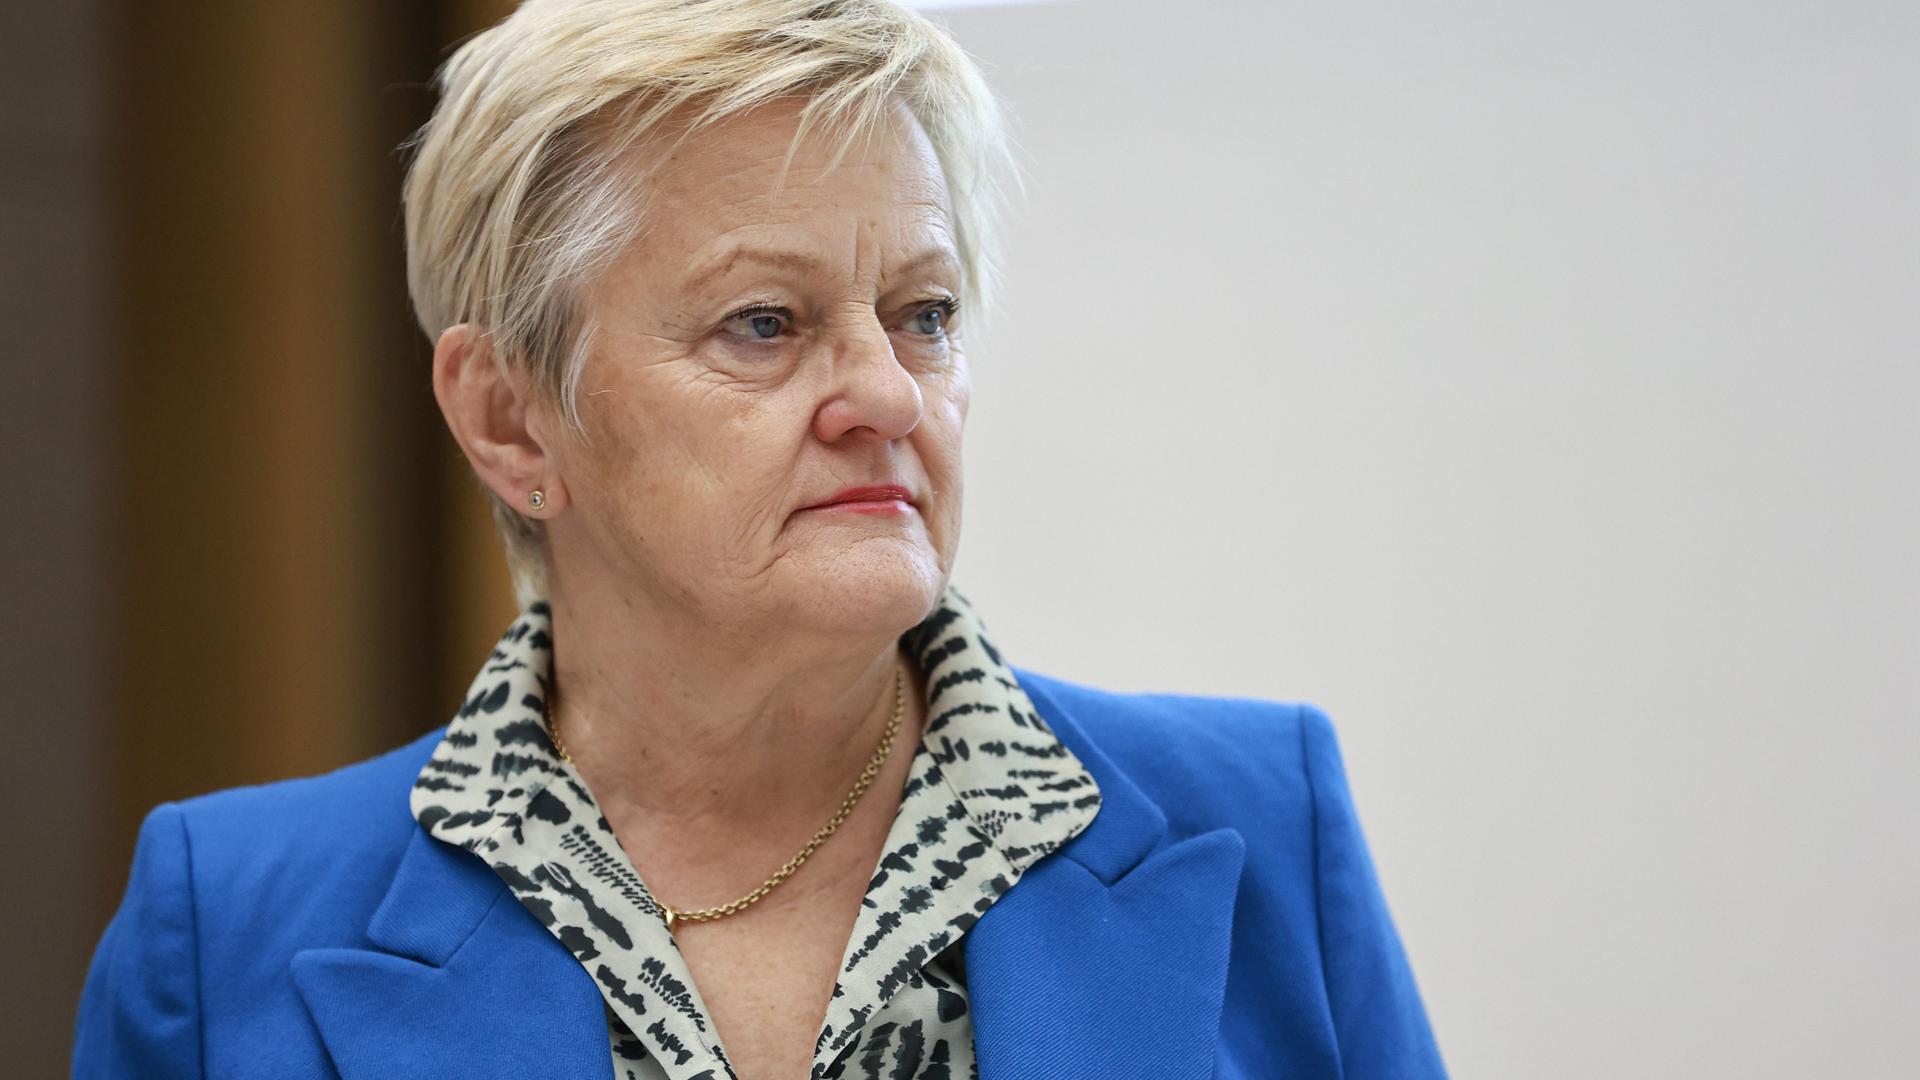 Die Grünen-Bundestagsabgeordnete Renate Künast trägt einen blauen Blazer und schaut an der Kamera vorbei.